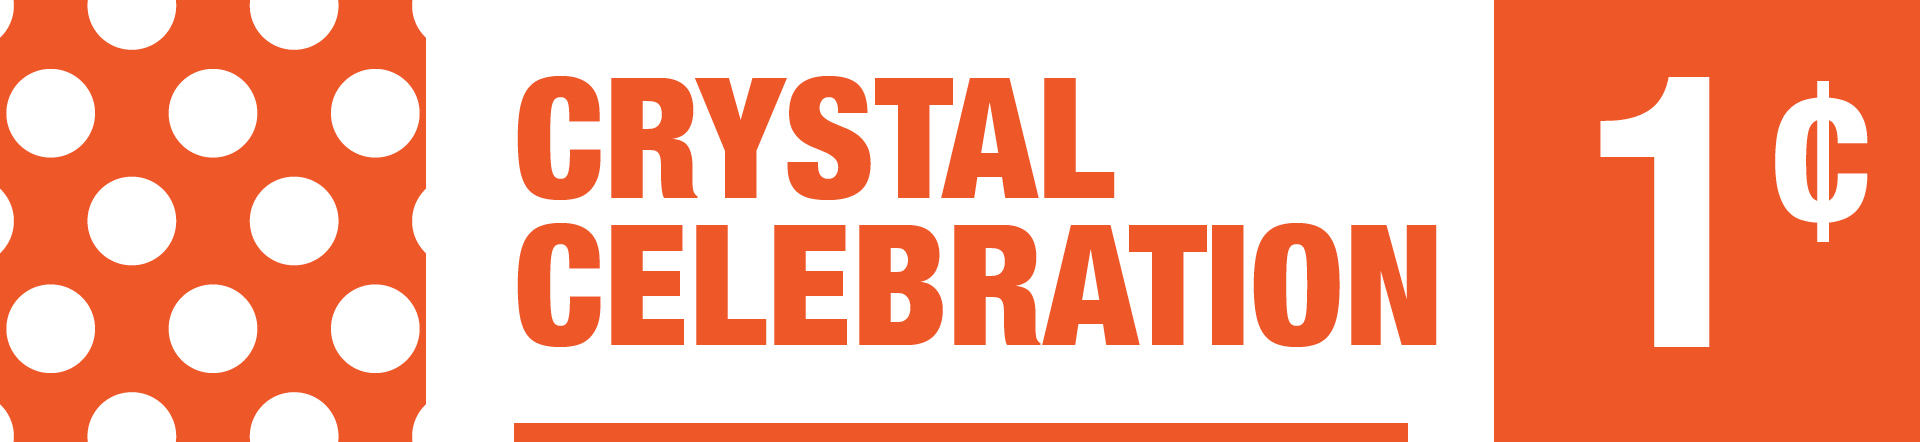 Crystal Celebration